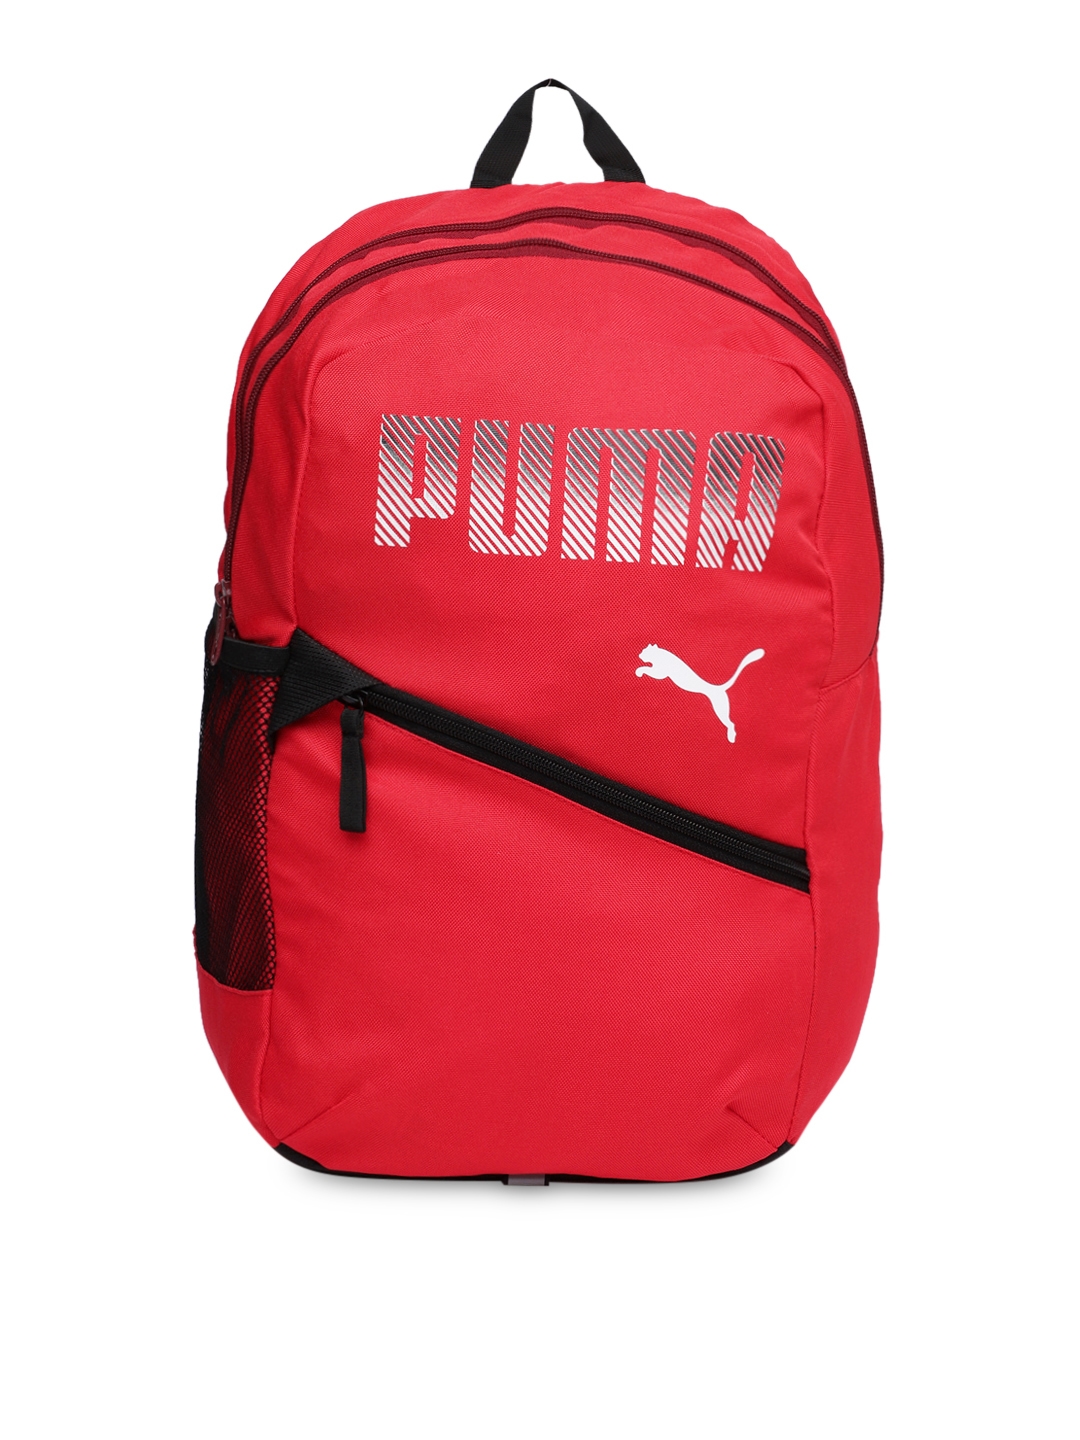 puma bags in myntra